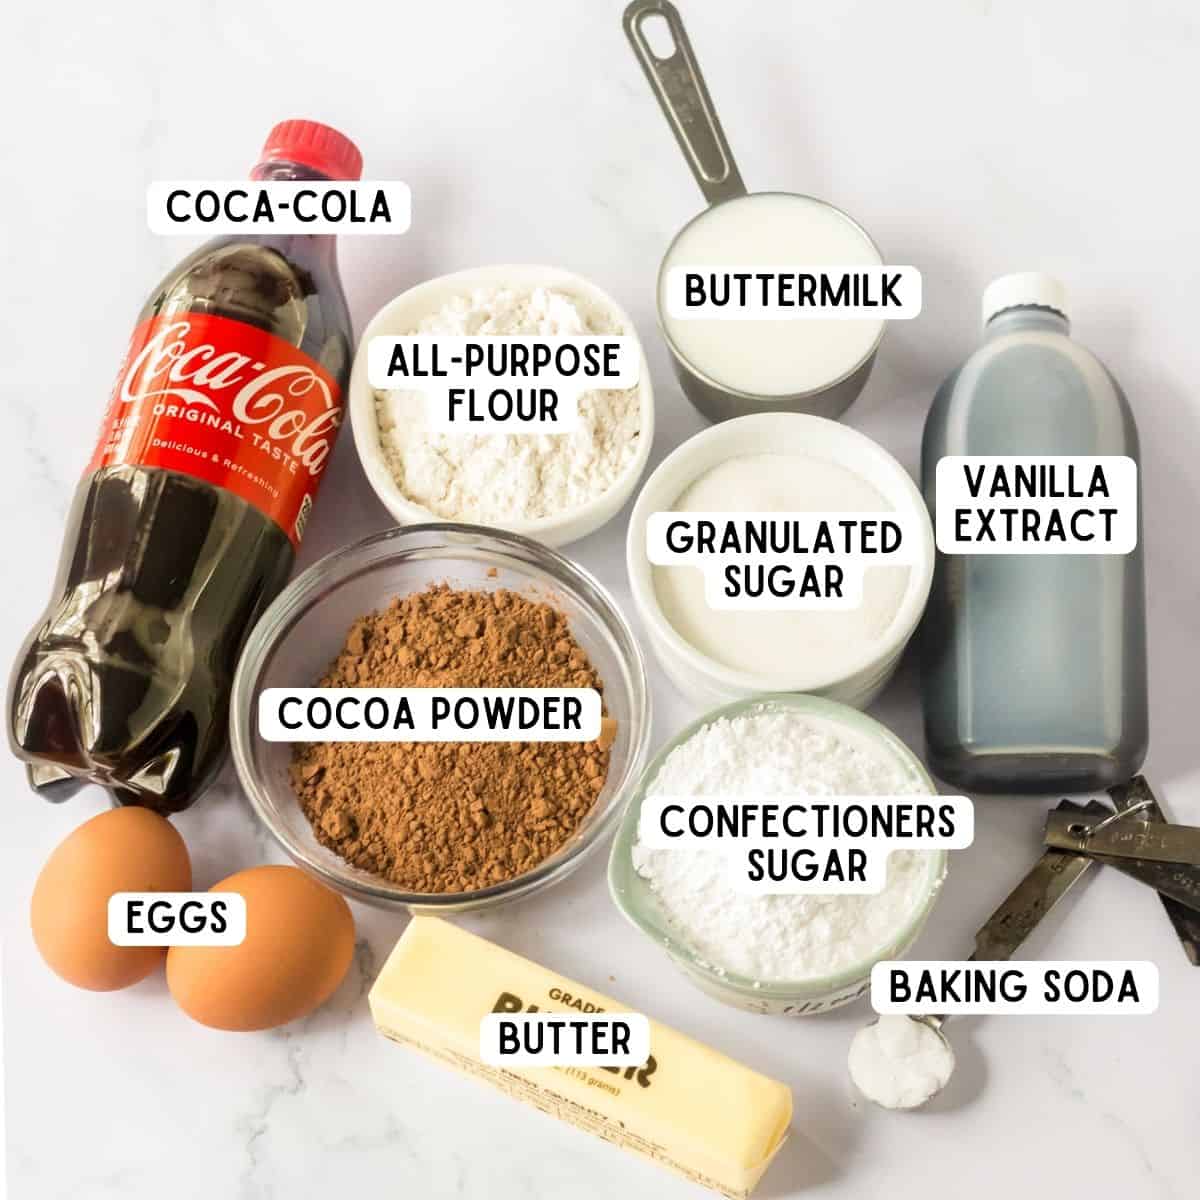 Bottle of Coca-Cola, all-purpose flour, cocoa powder, vanilla extract, buttermilk, stick of butter, baking soda, 2 eggs, granulated sugar, and confectioner's sugar.